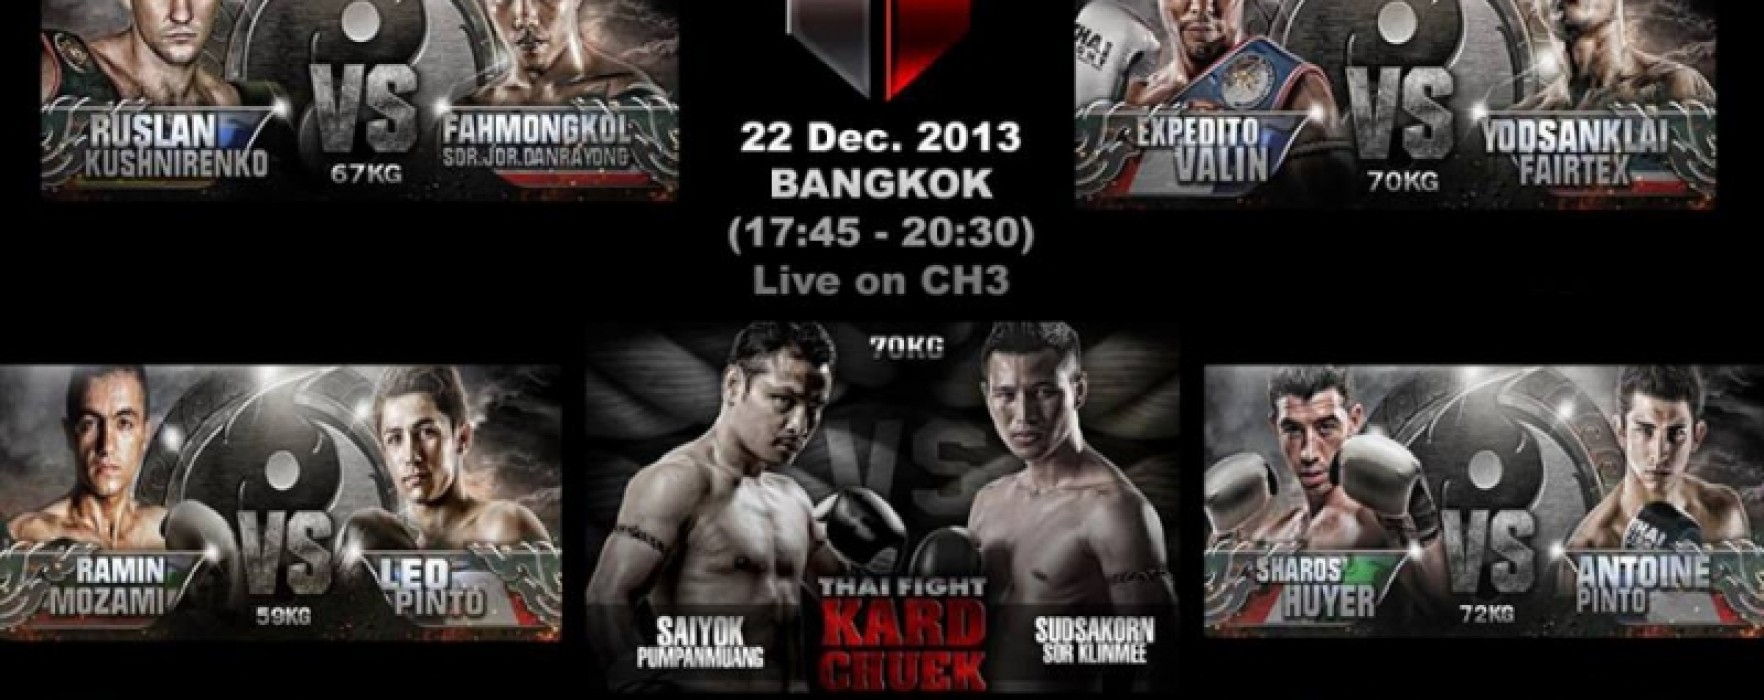 Video e risultati Thai Fight 22 Dicembre 2013